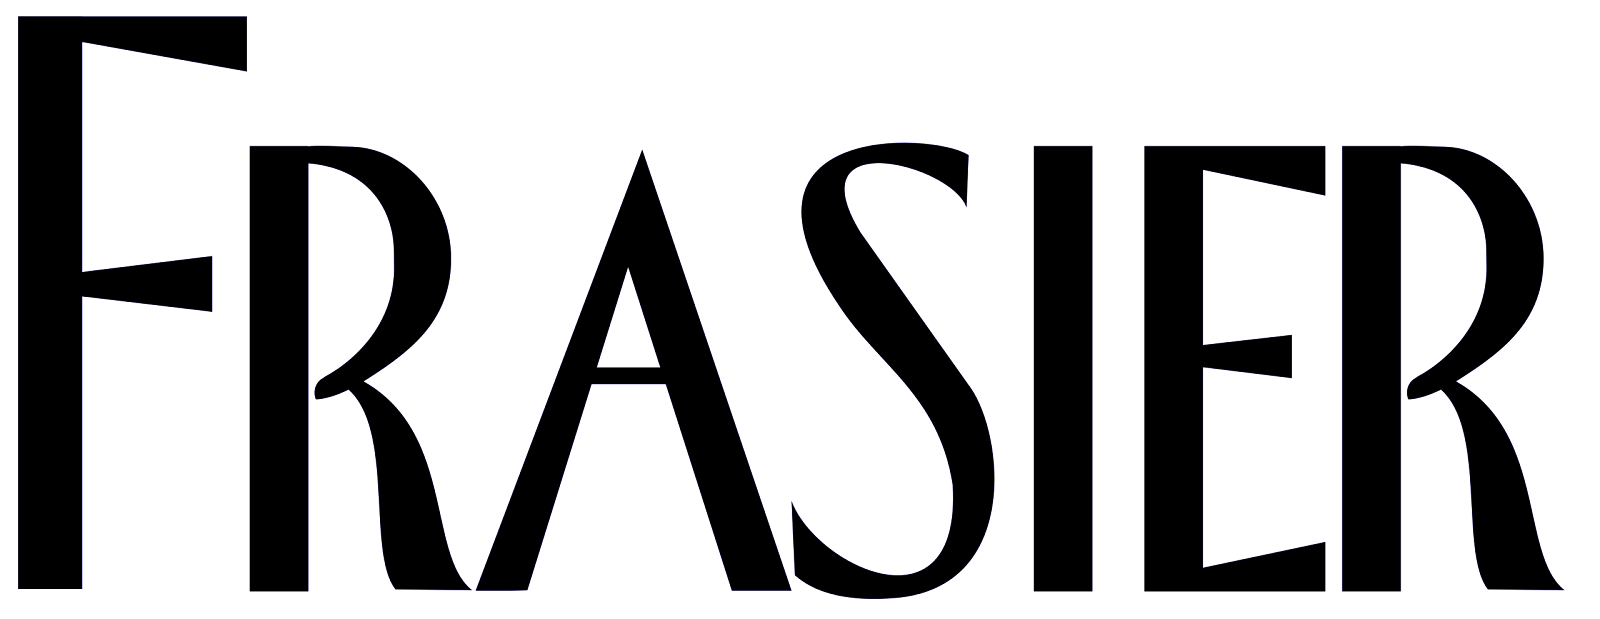 File:Frasier title logo.svg - Wikimedia Commons